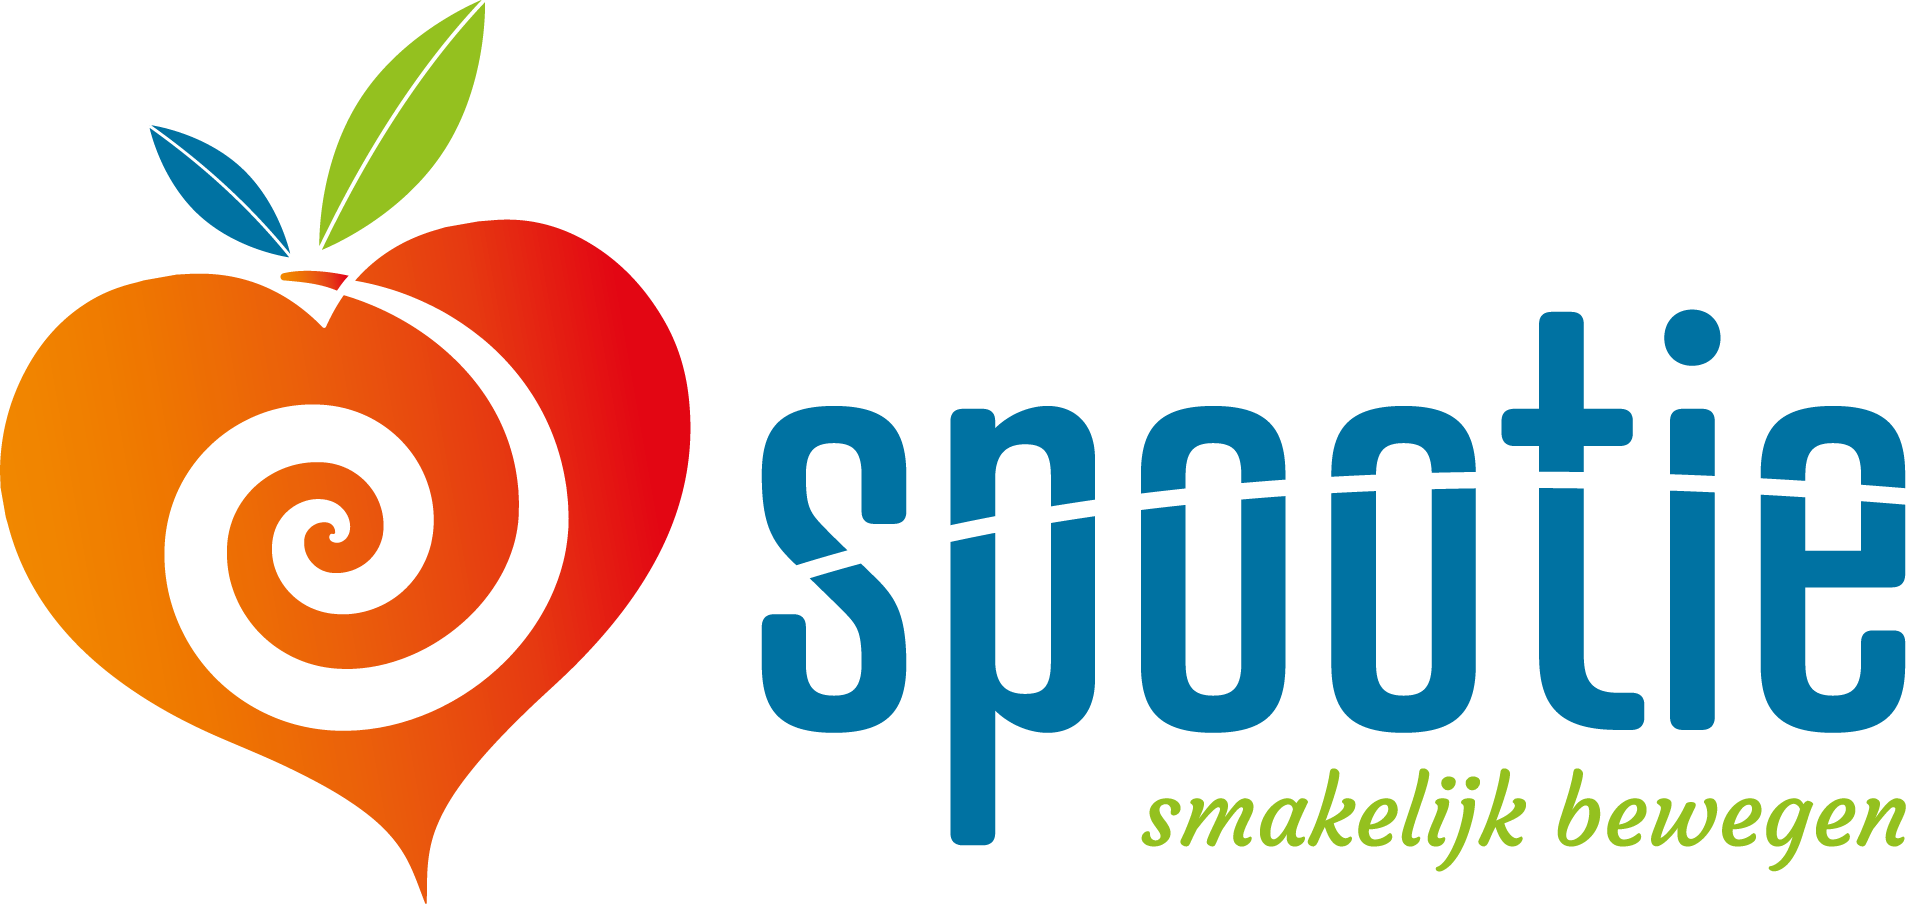 Spootie_logo_web